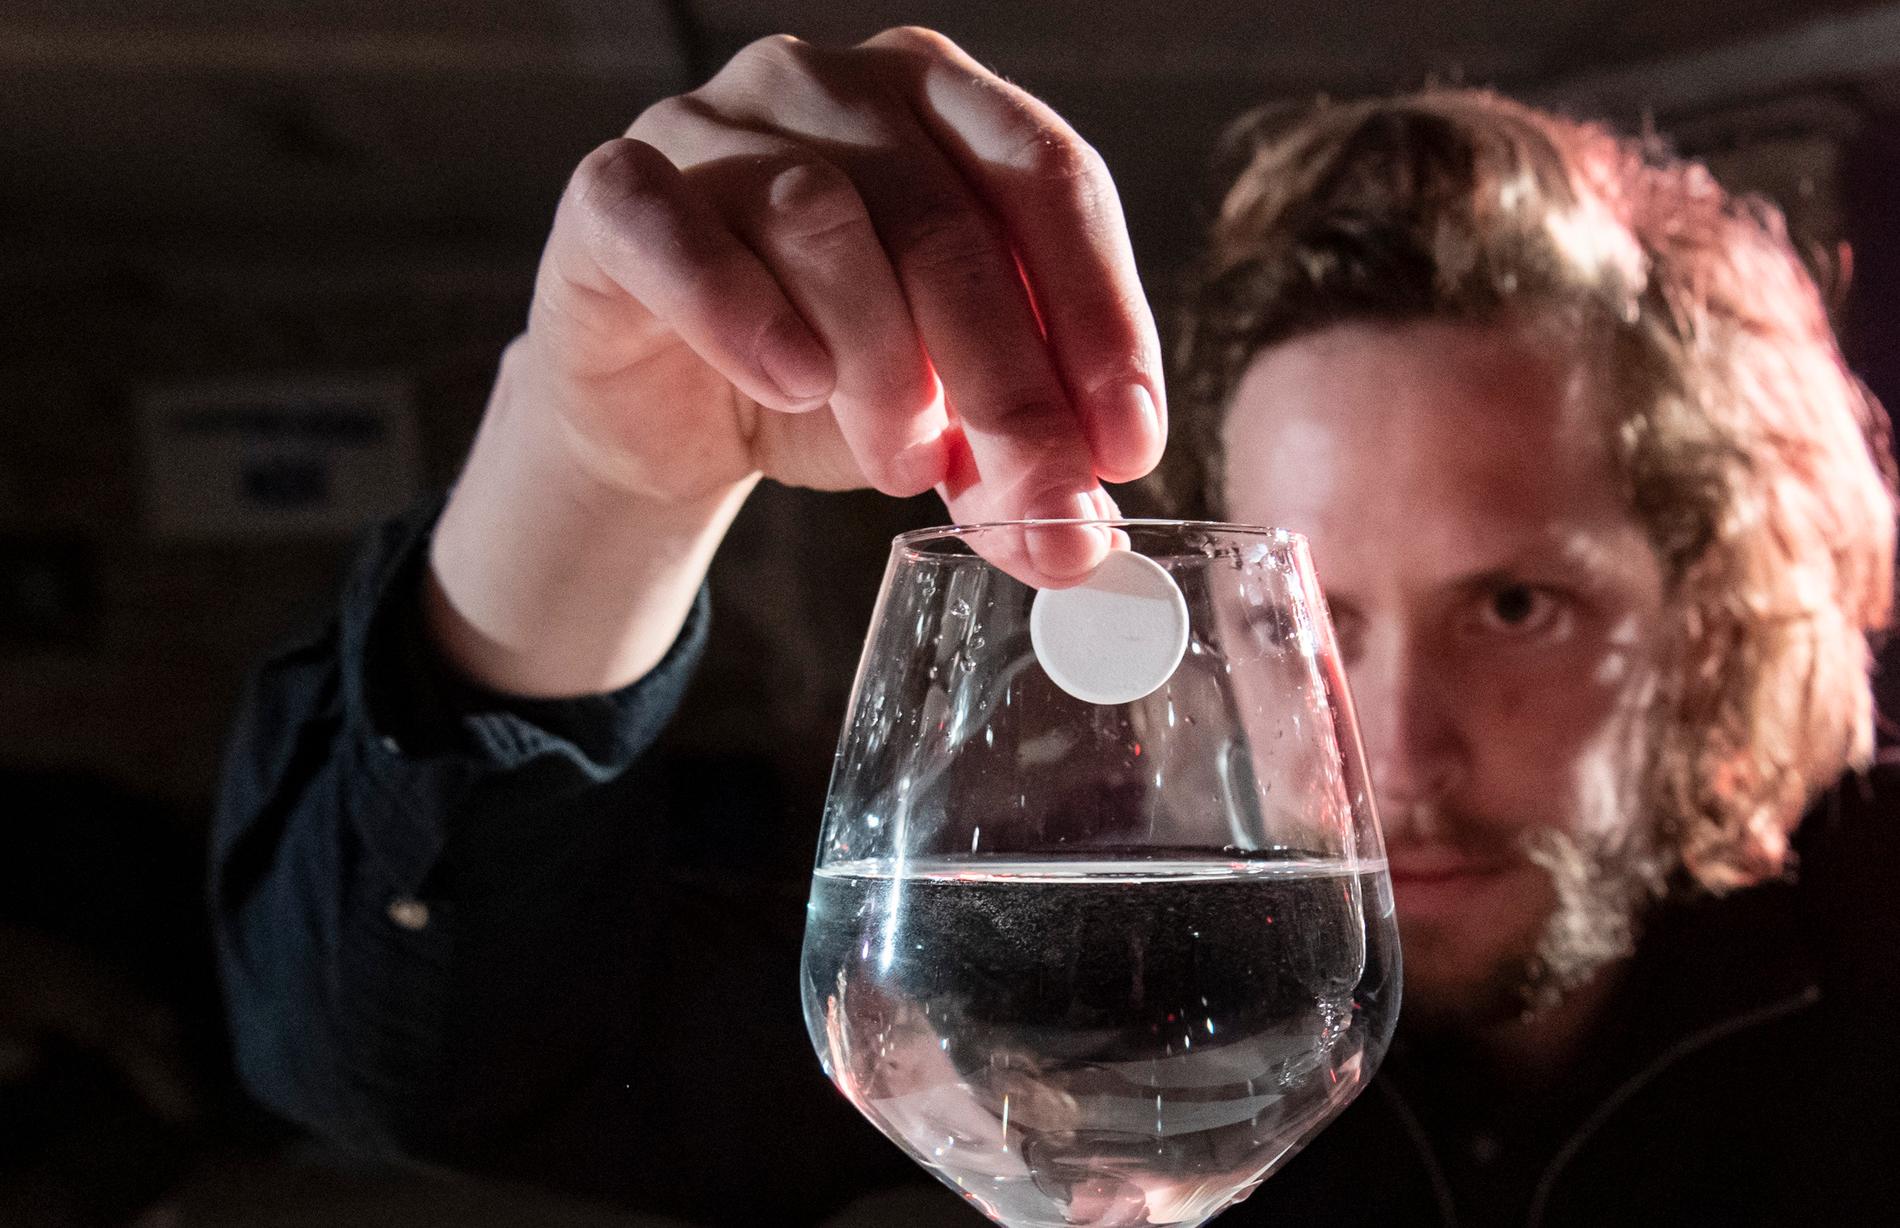 "För mig är det något lugnande och fint i det här ljudet – och nostalgiskt", säger Malmökonstnären Alexander Höglund om det spröda, lite fräsande ljudet av en brustablett som läggs i ett glas vatten.